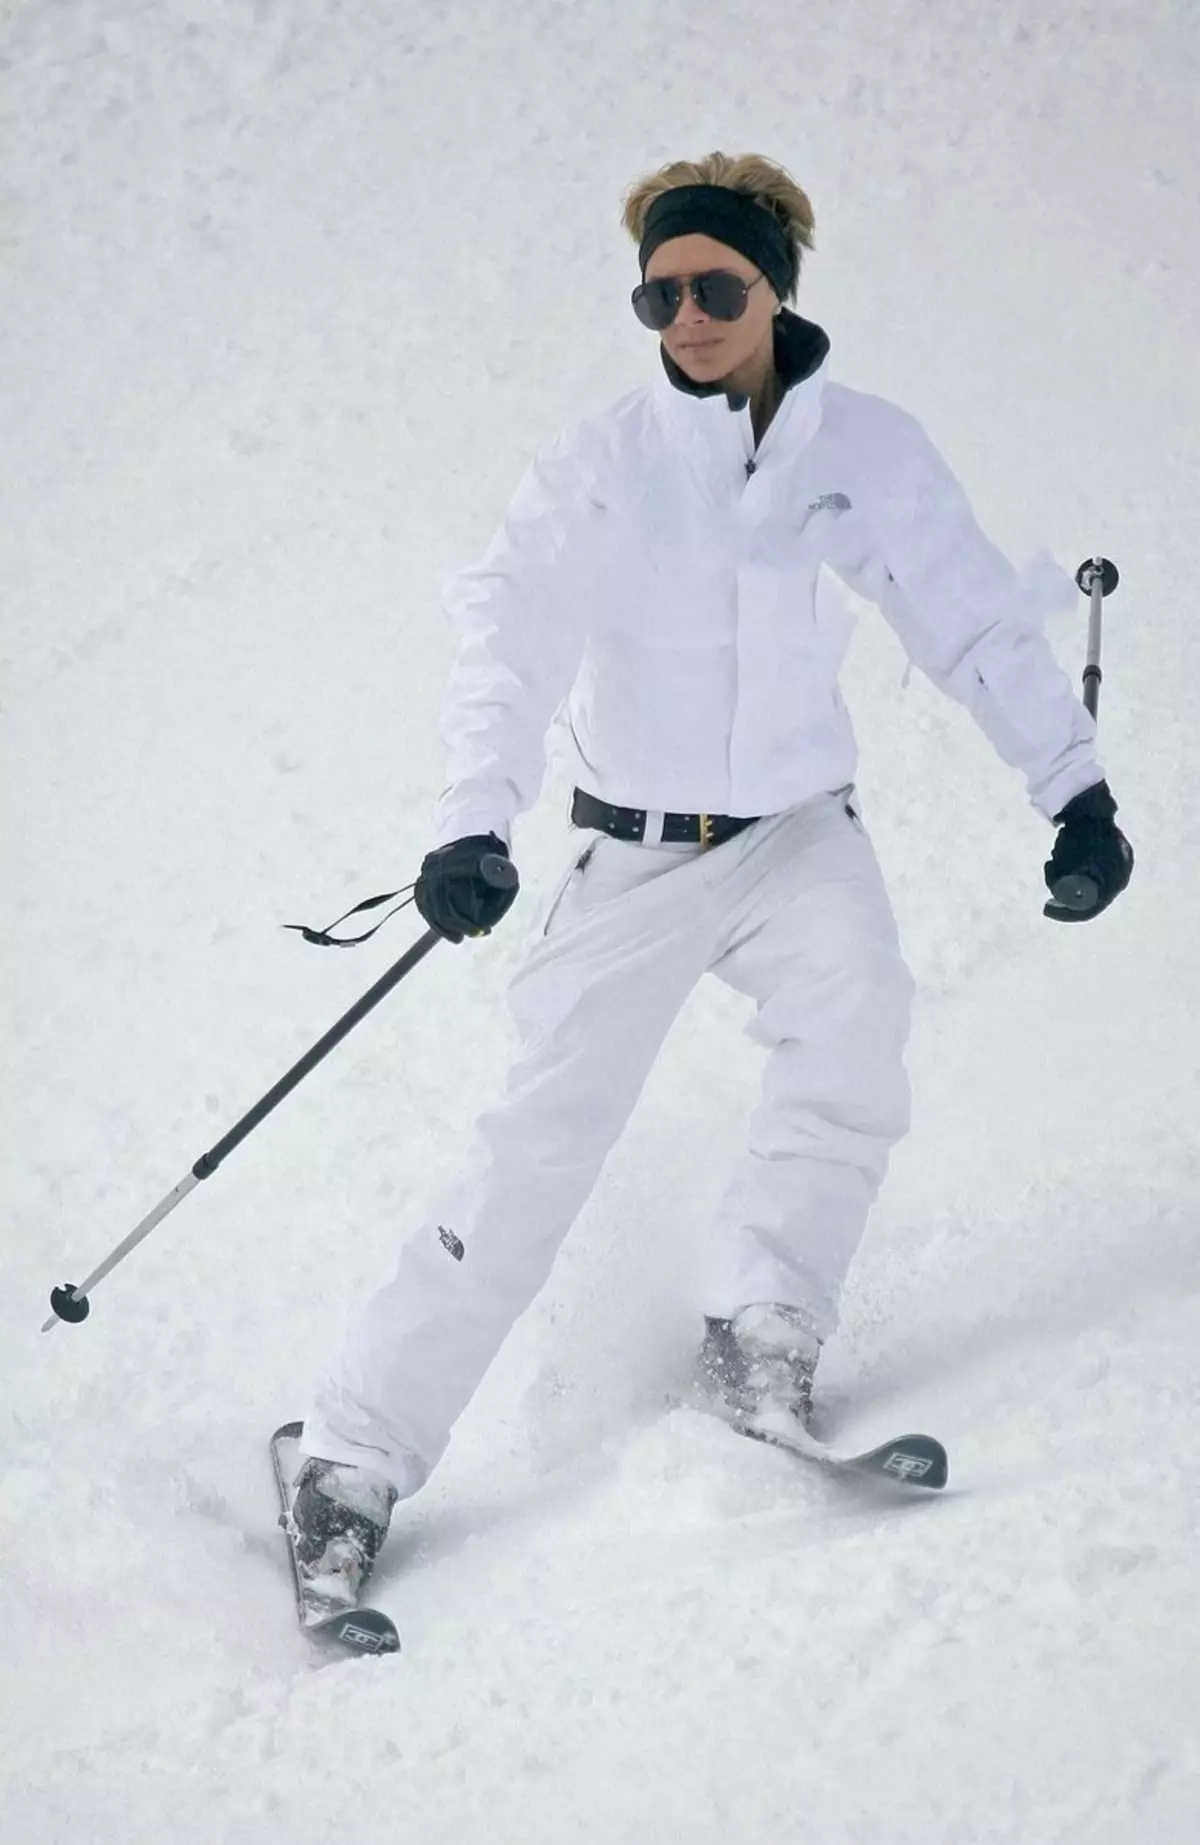 Skihandsker (61 billeder): Kvinders ski modeller til sport, oversigt over populære mærker - Reysshe, Head, Salomon, Leki 15203_14